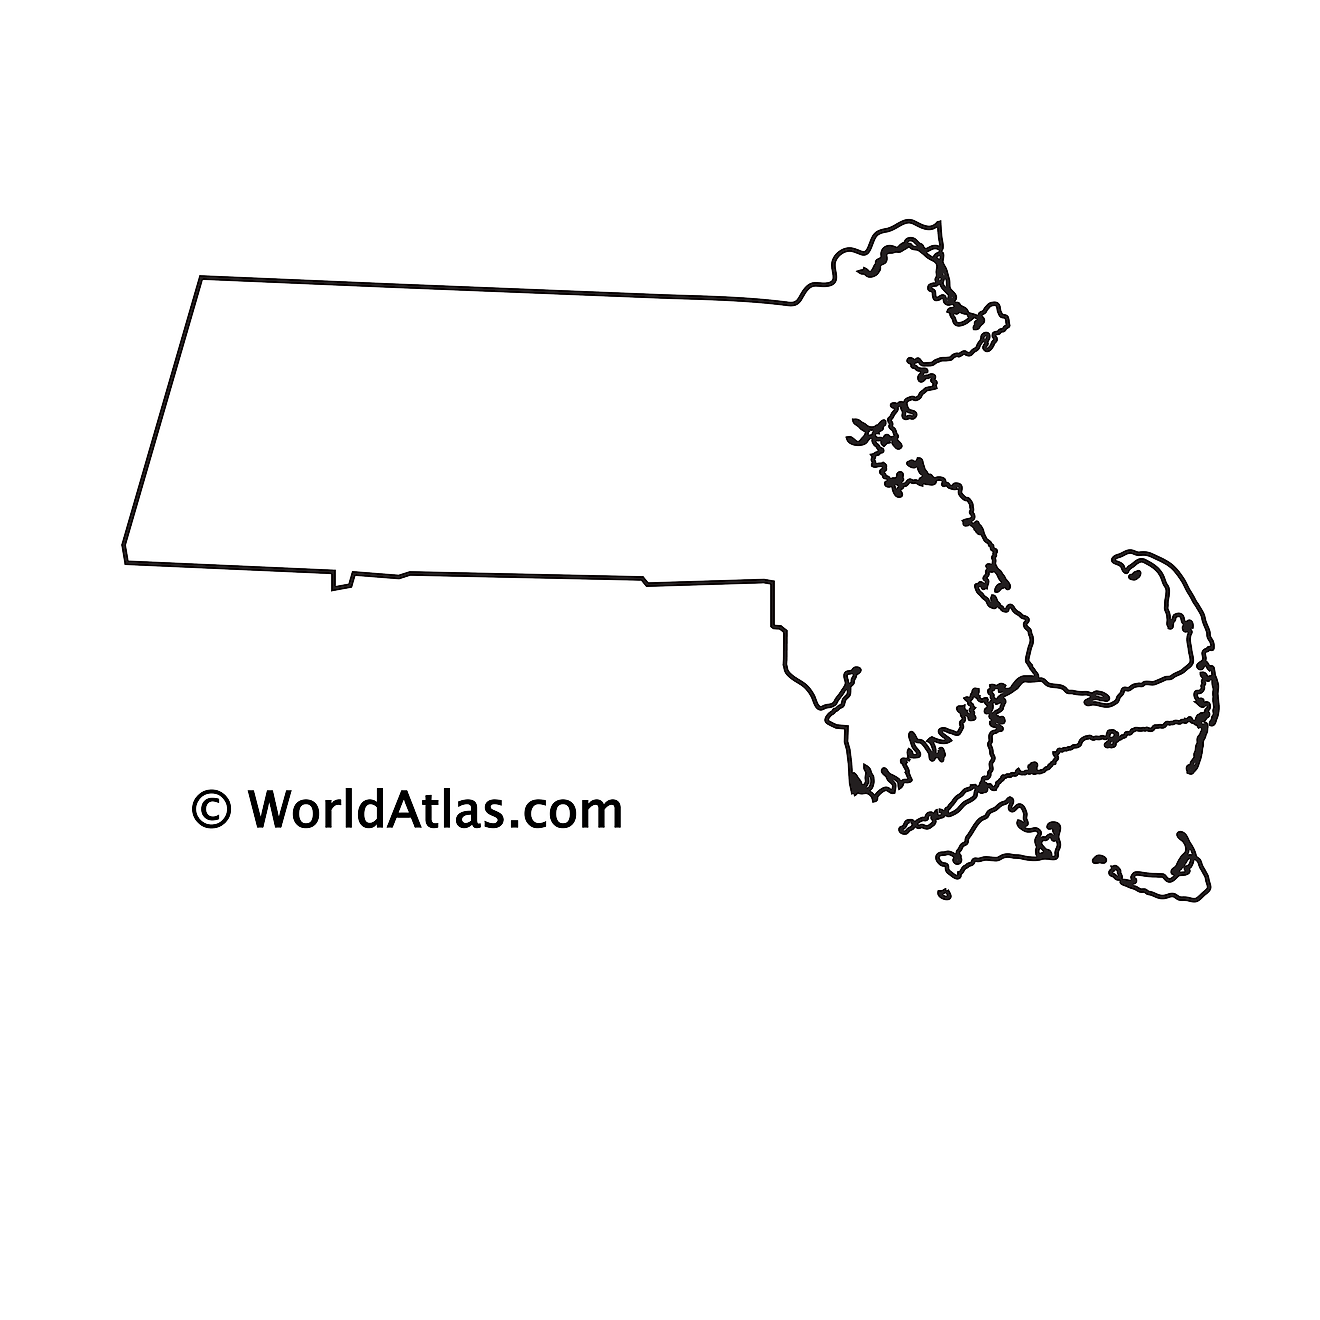 Blank outline map of Massachusetts